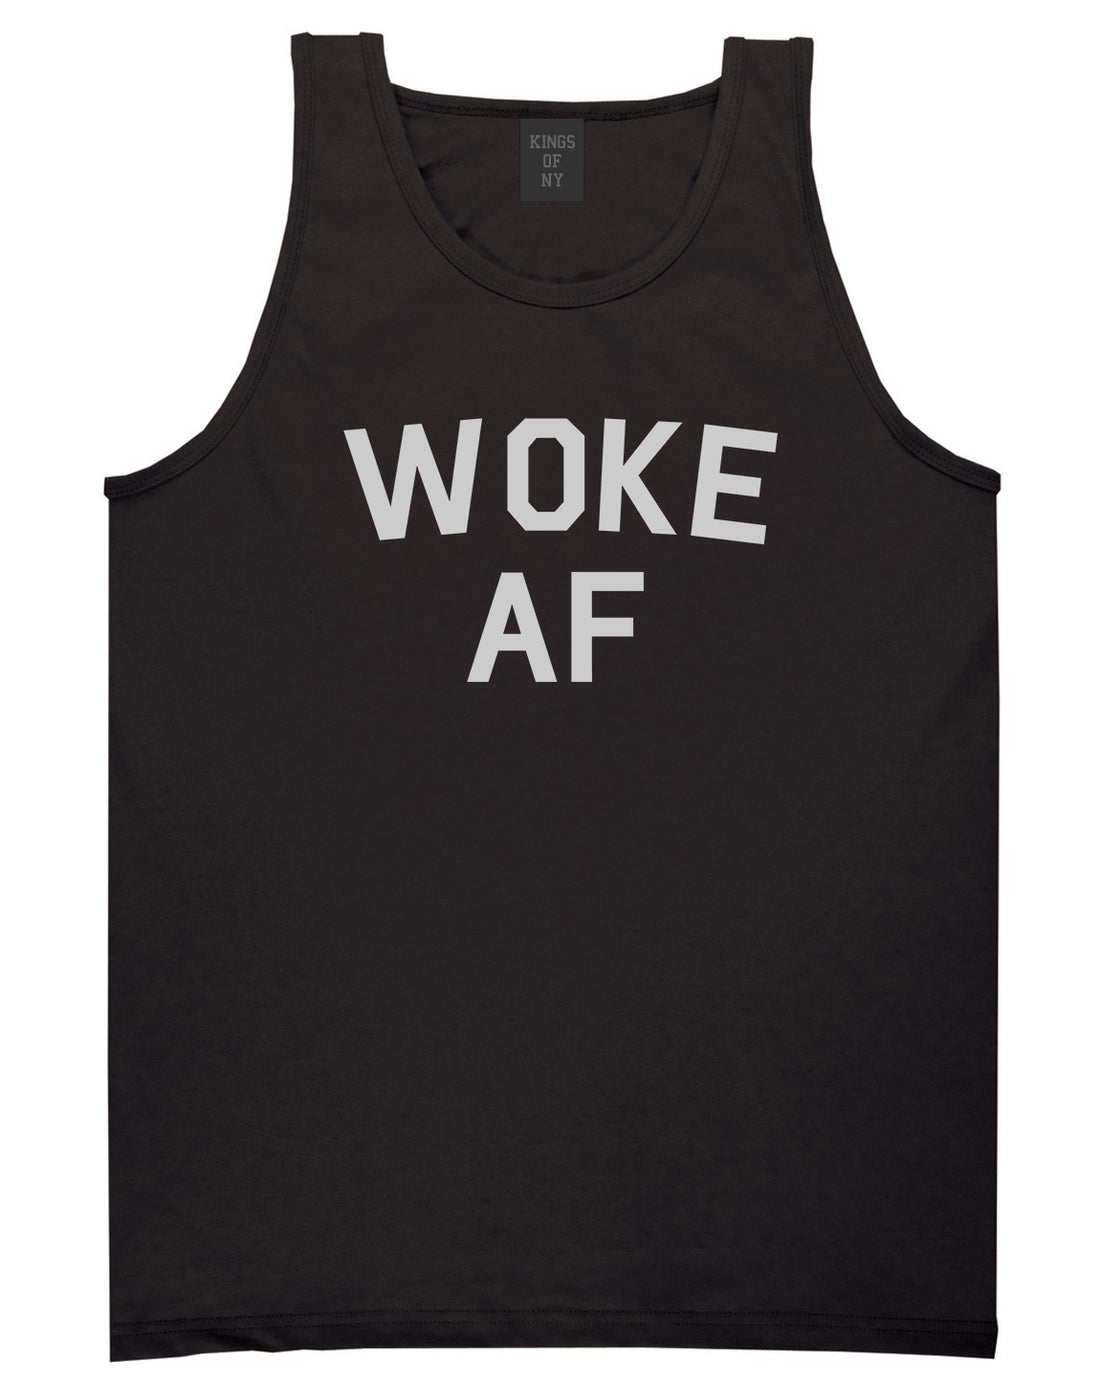 Woke AF Mens Tank Top Shirt Black